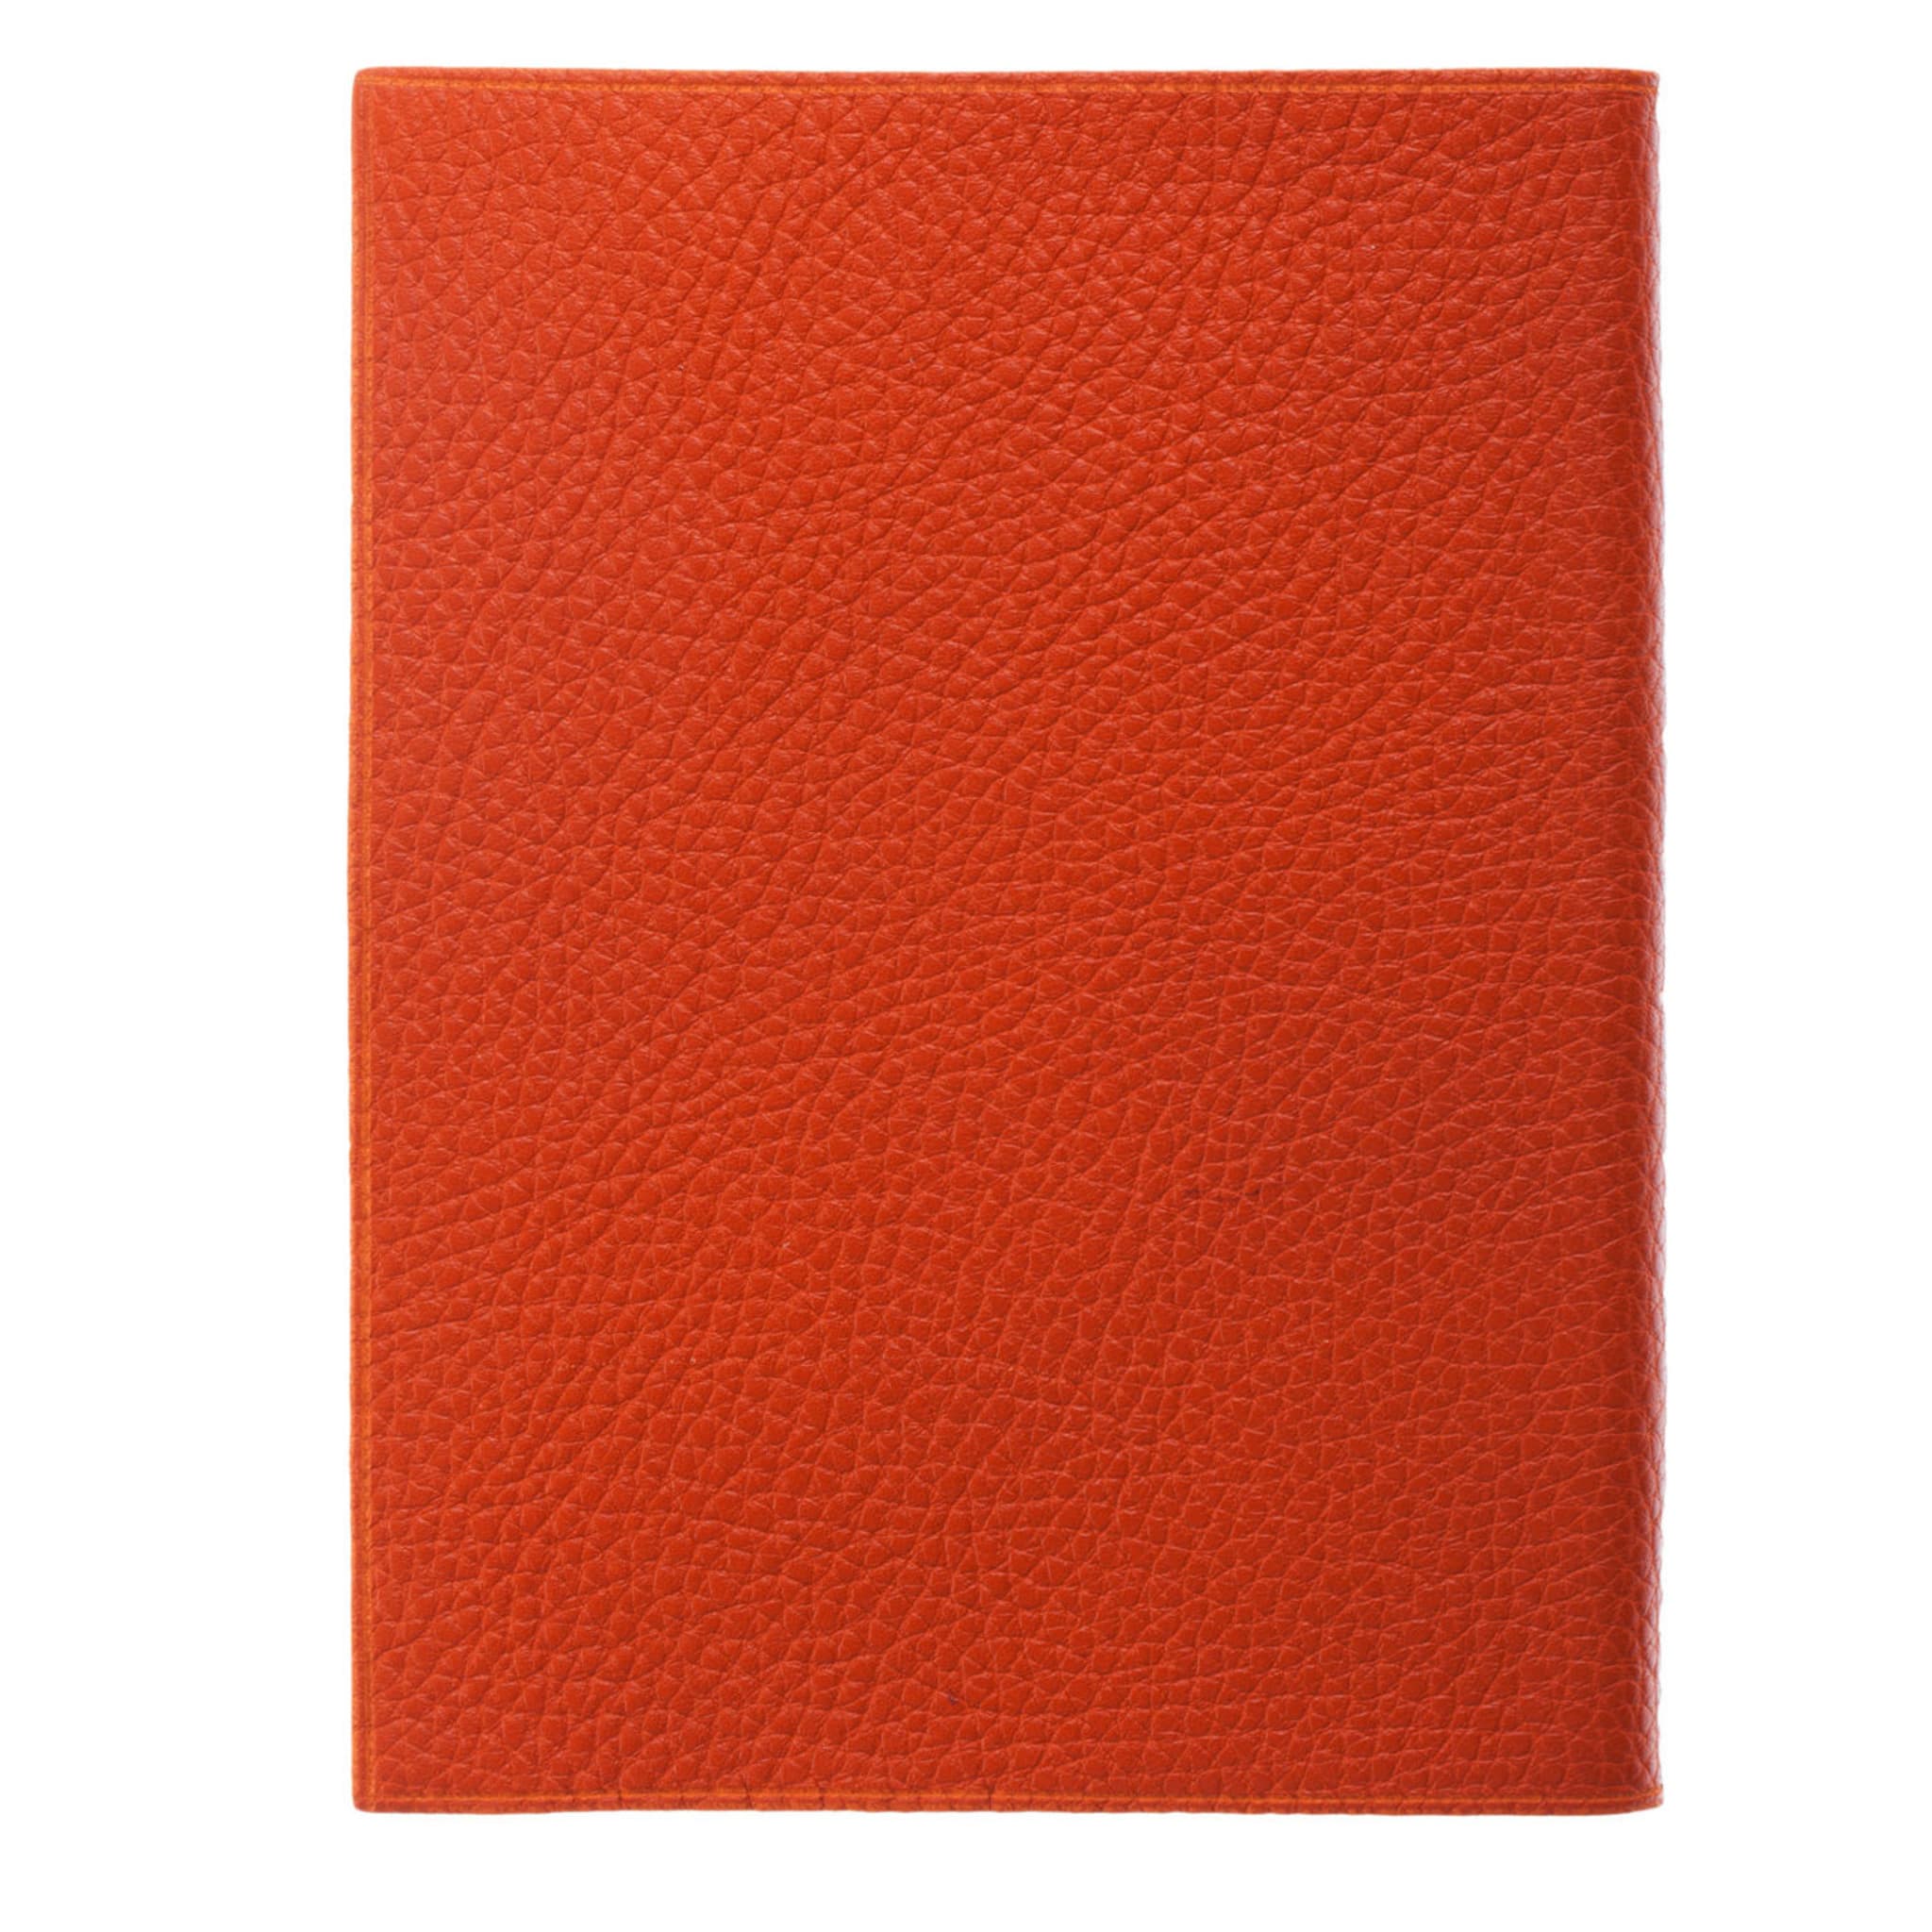 Carnet de notes en cuir Arancia - Vue alternative 2